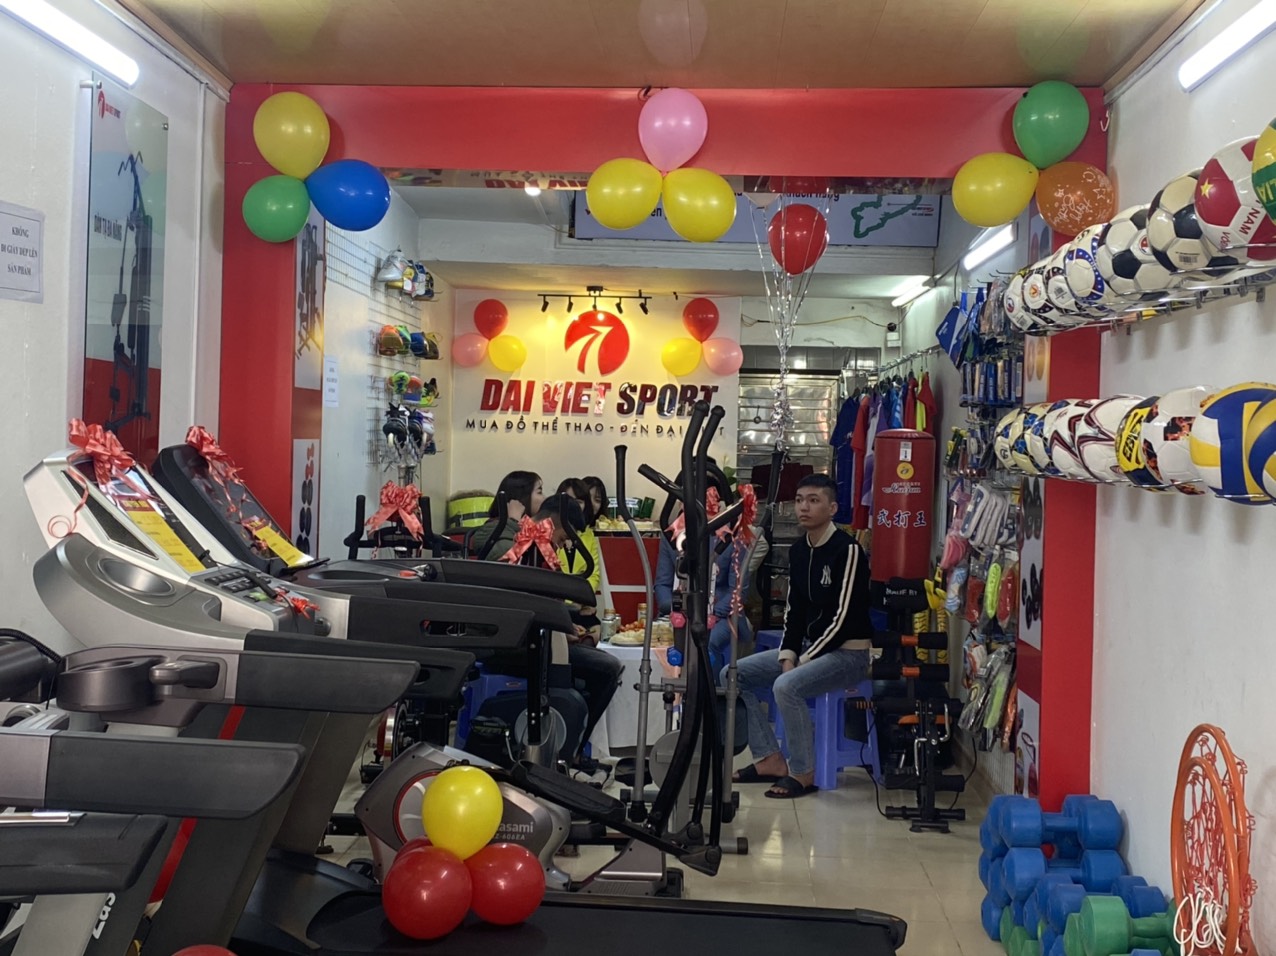 Sẽ không còn khó khăn khi bạn đang muốn tìm một địa chỉ bán máy chạy bộ và ghế massage uy tín tại Thái Bình bởi Đại Việt Sport nay đã có chi nhánh tại TP. Thái Bình để phục vụ nhu cầu mua sắm các thiết bị thể thao, ghế massage dành cho khách hàng nơi đây.